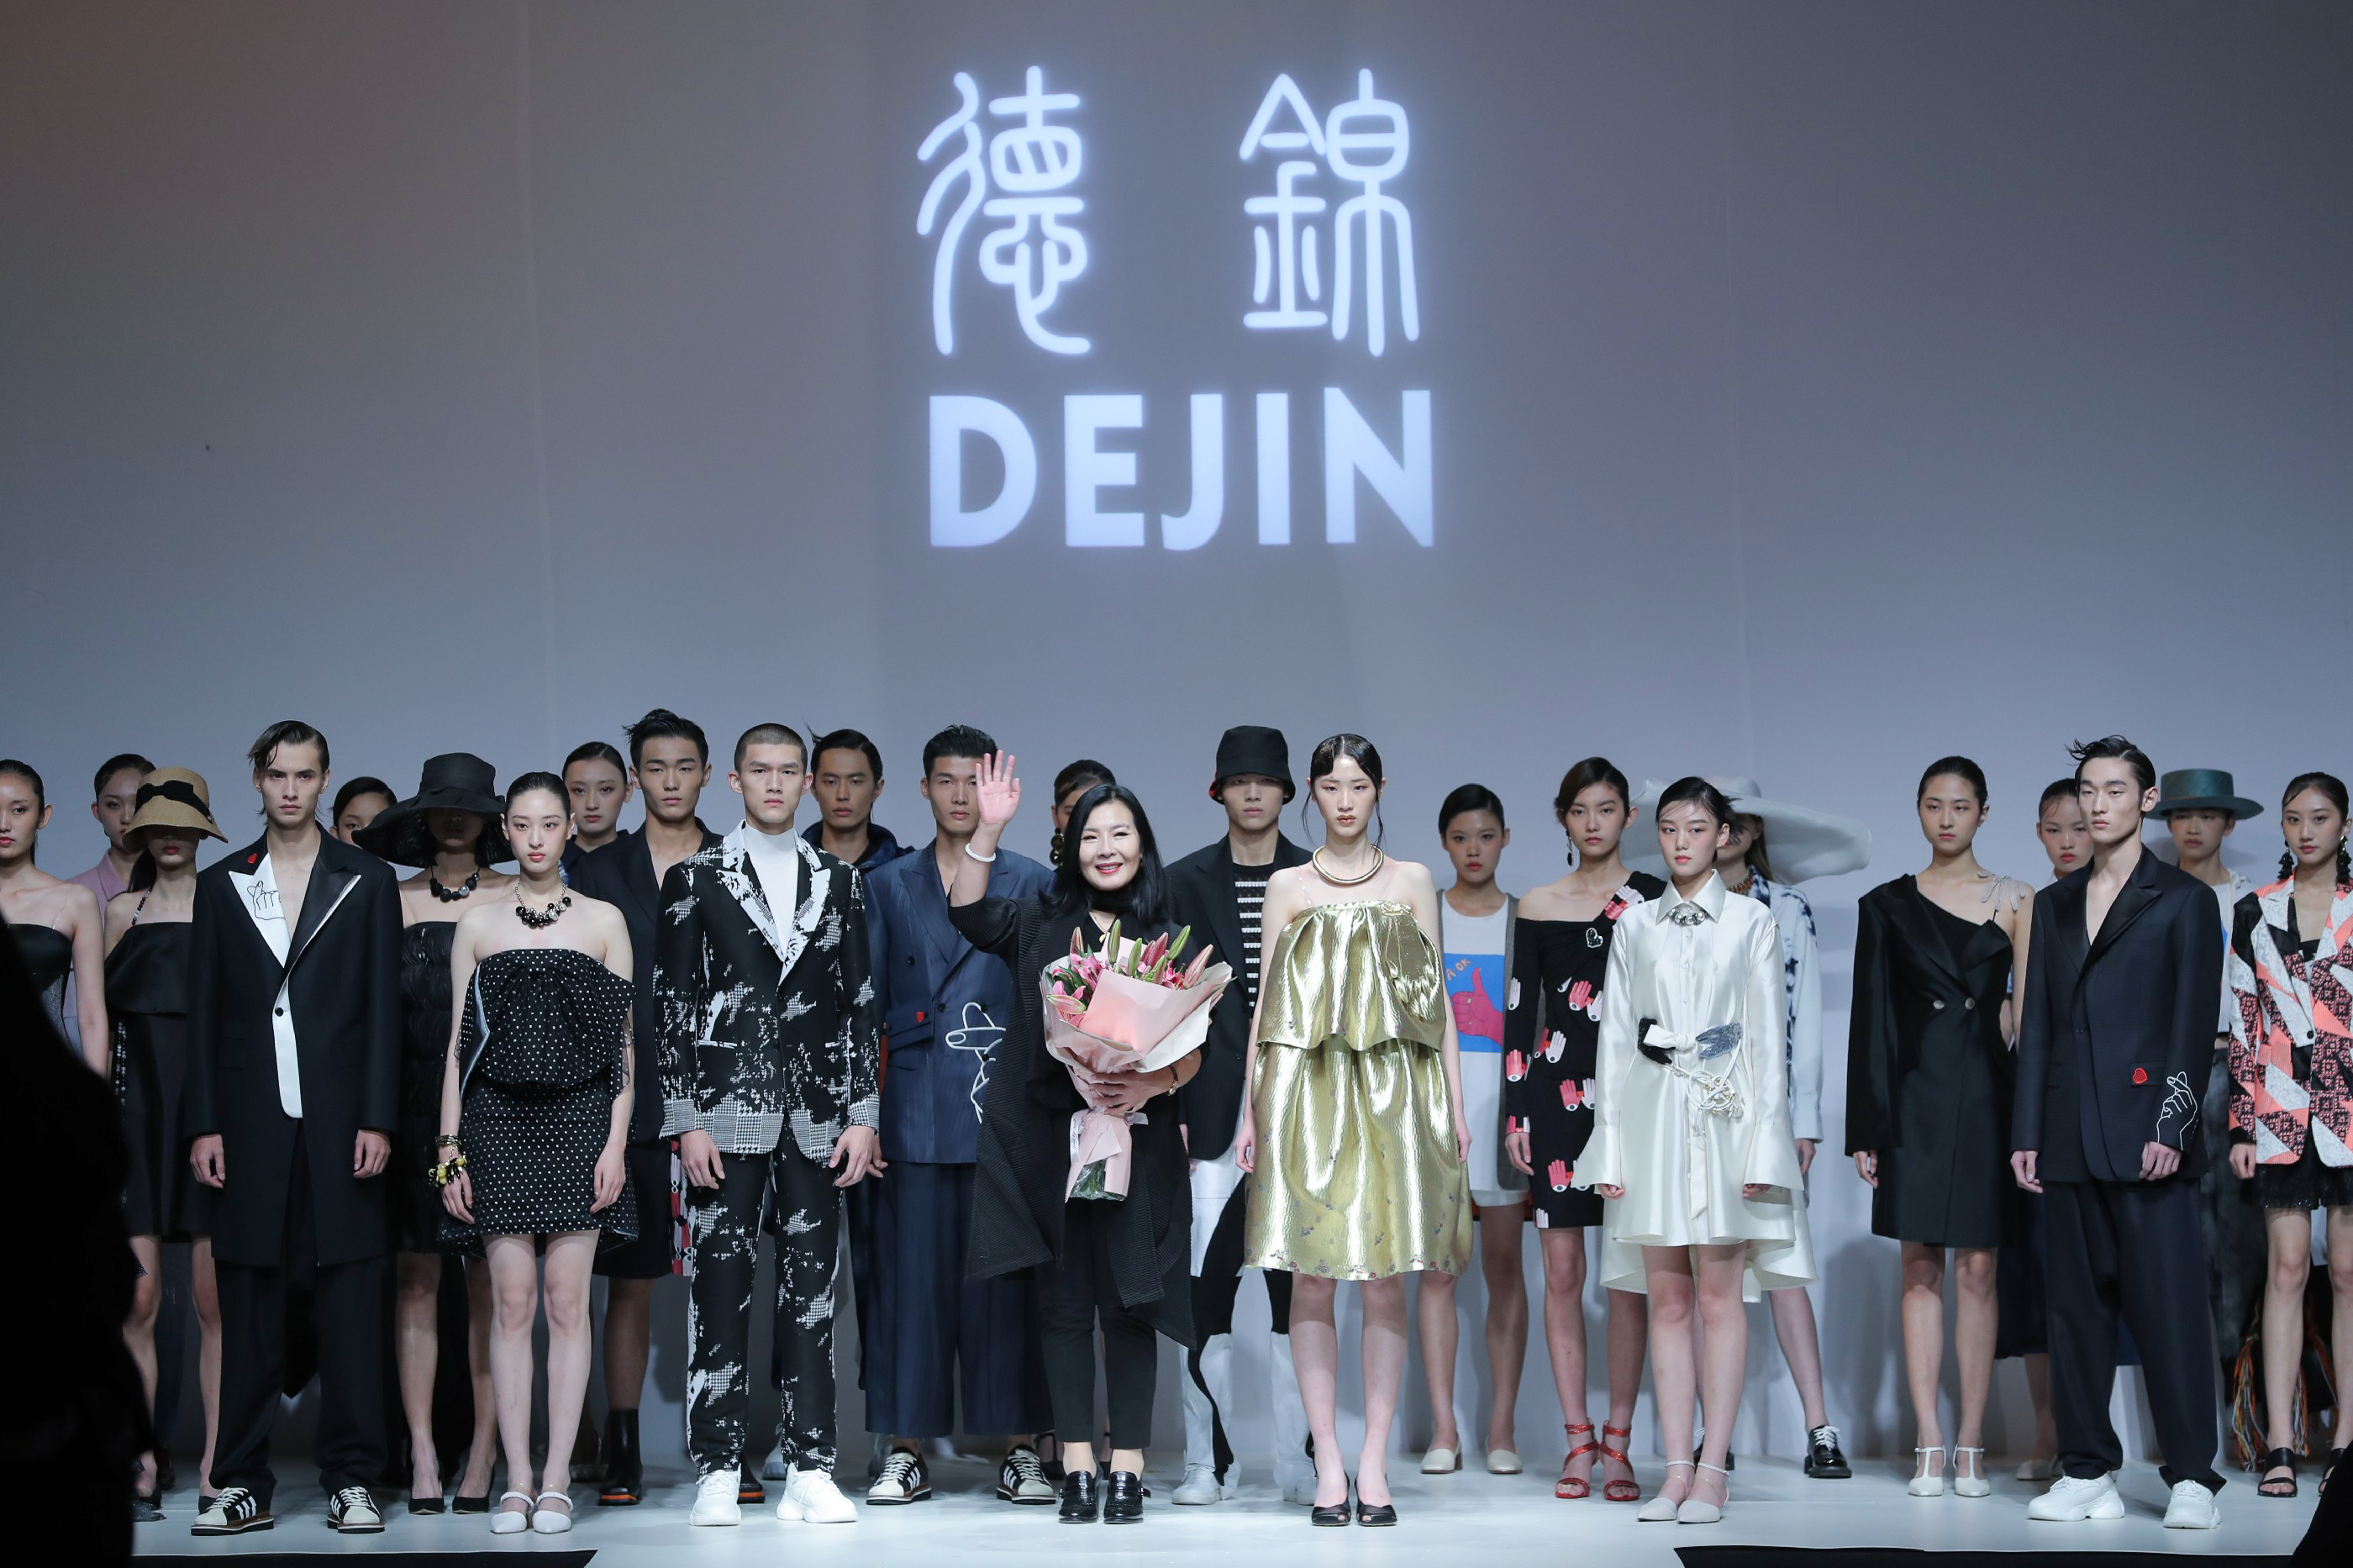 德锦品牌三登中国国际时装周 《手写》传承创新打造“新国潮”